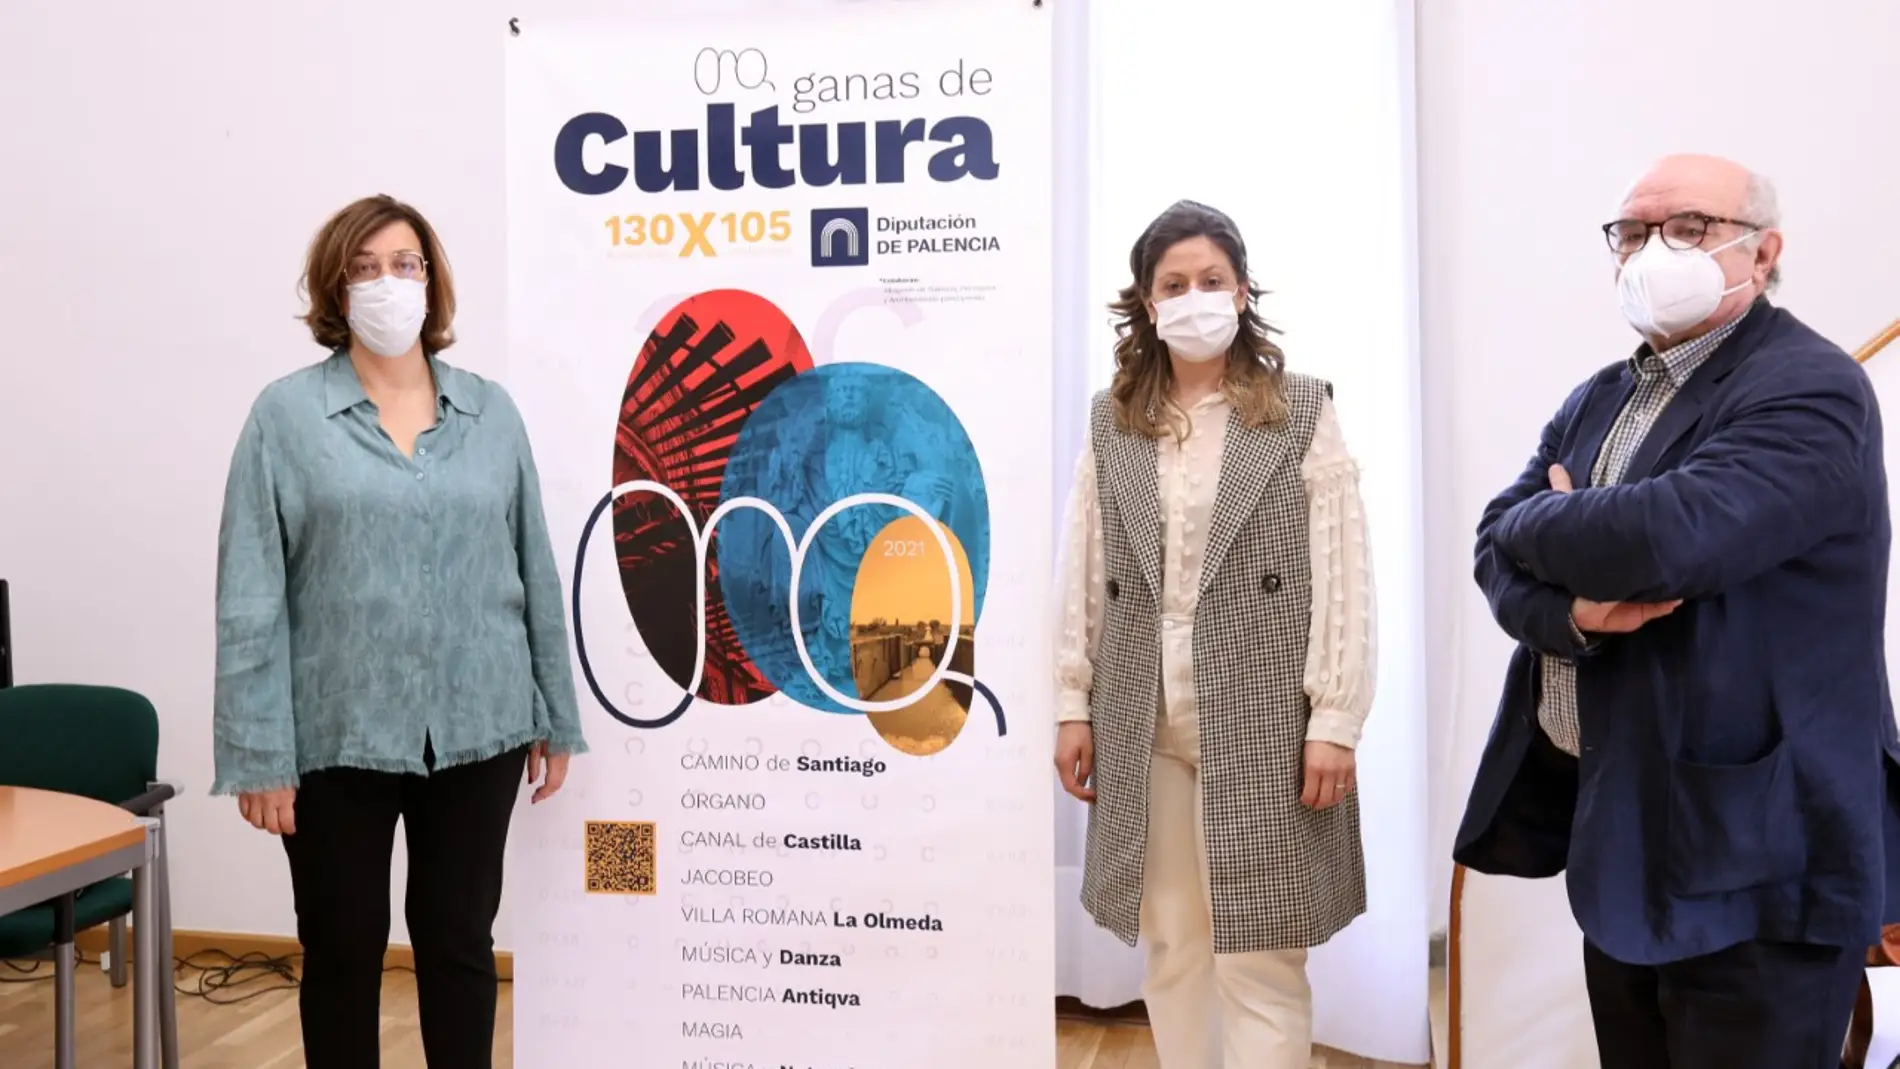 La Diputación organiza más de 130 actividades dentro del programa "Ganas de Cultura"